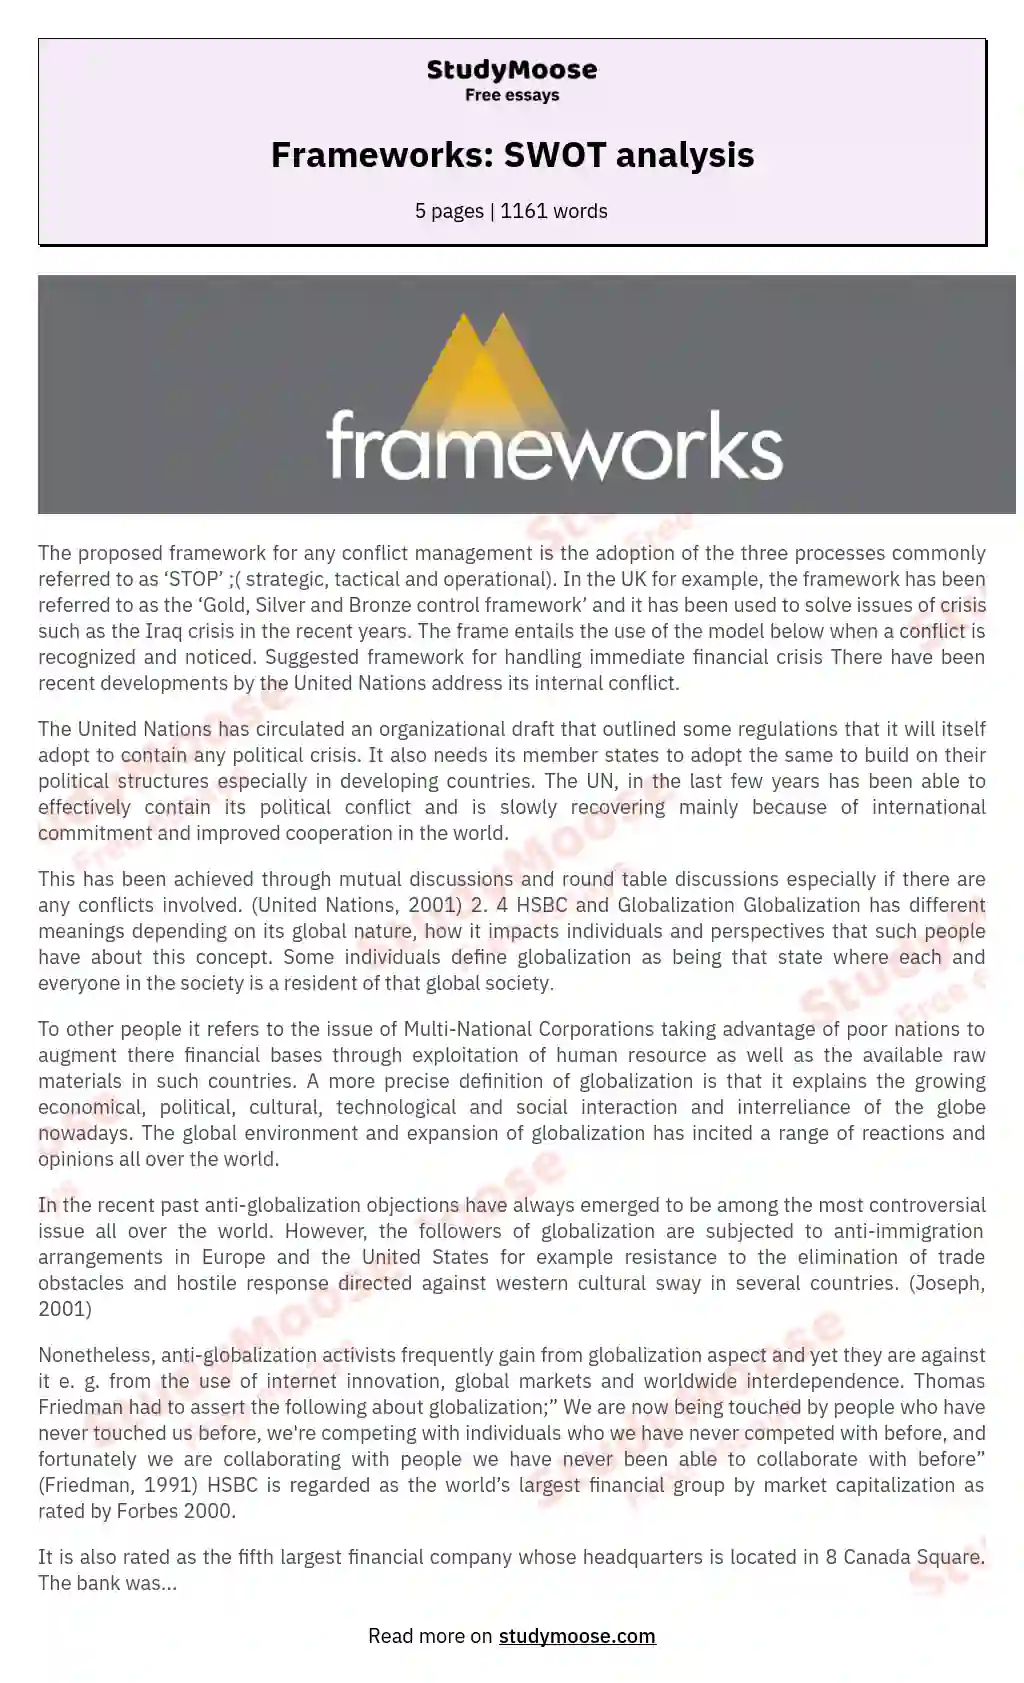 Frameworks: SWOT analysis essay